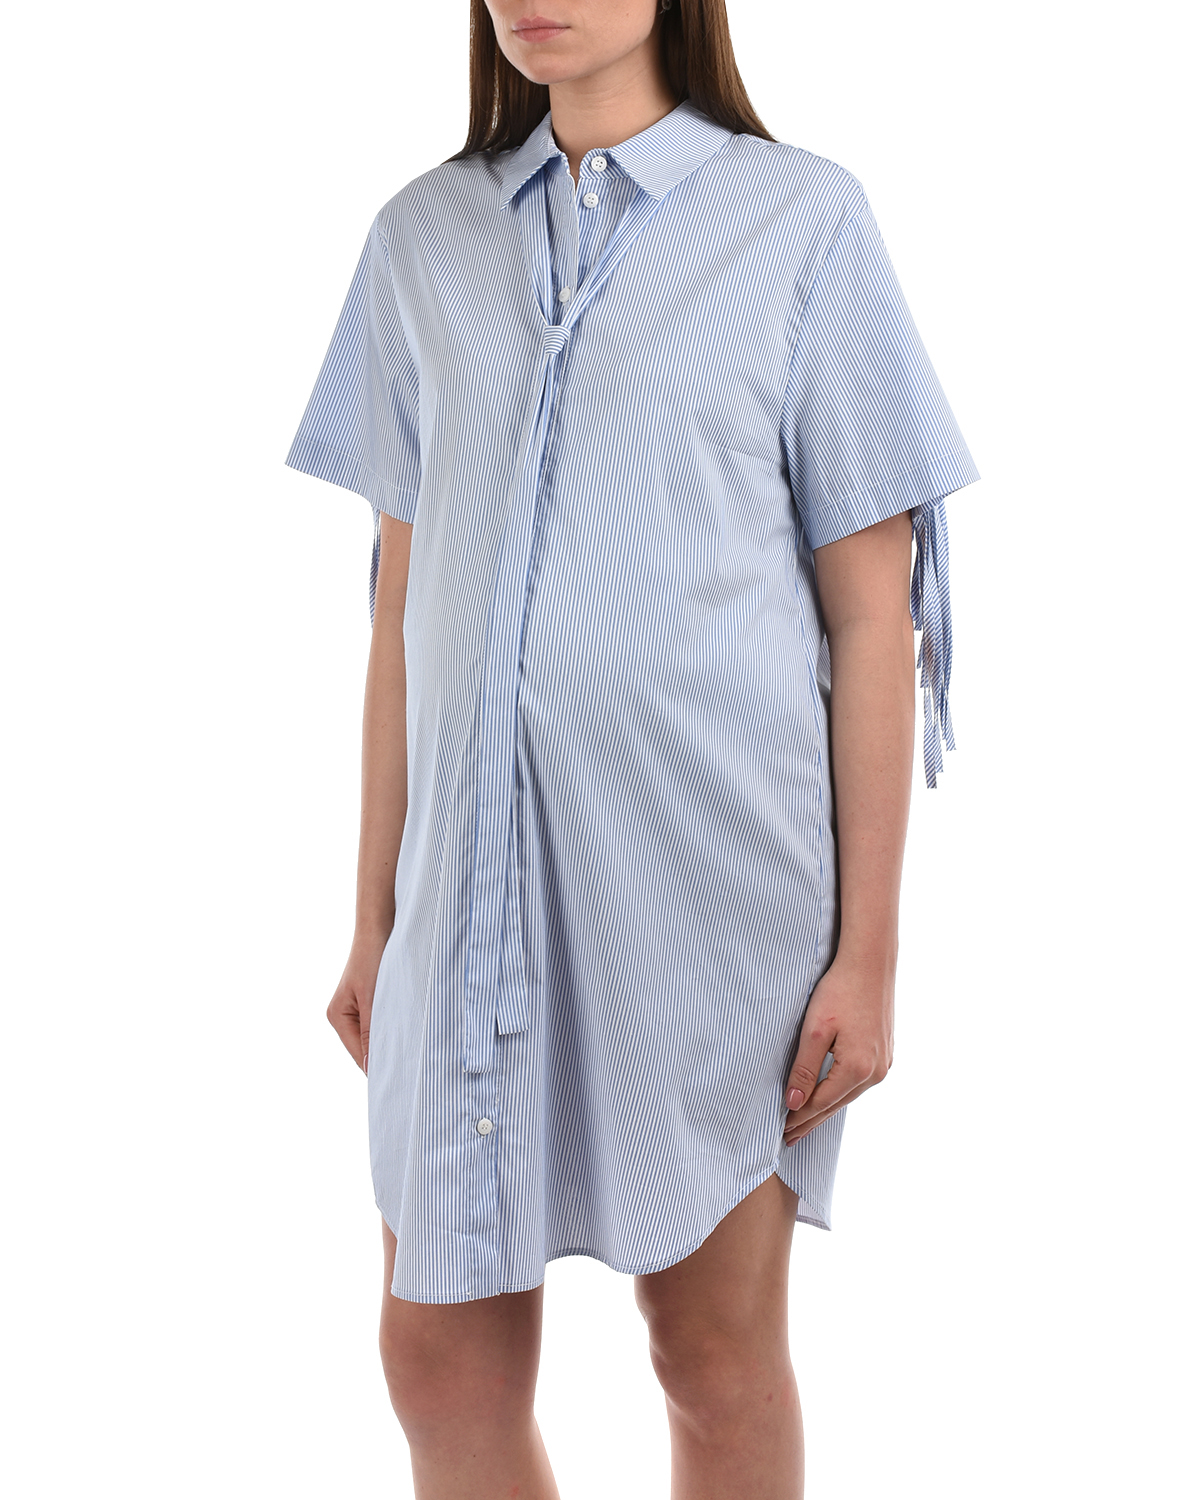 Платье-рубашка с бахромой Attesa, размер 38, цвет голубой - фото 7